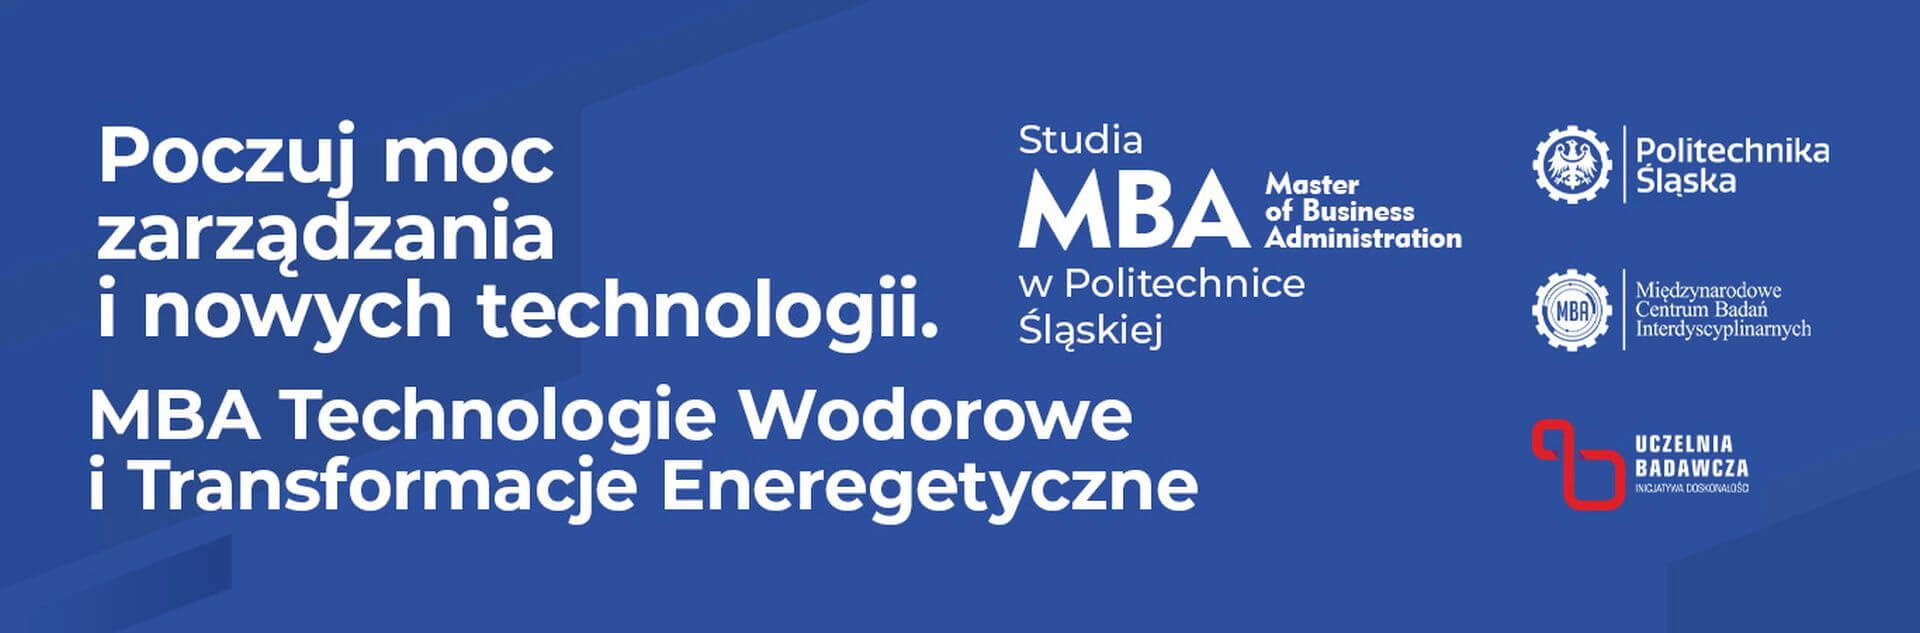 MBA na Politechnice Śląskiej